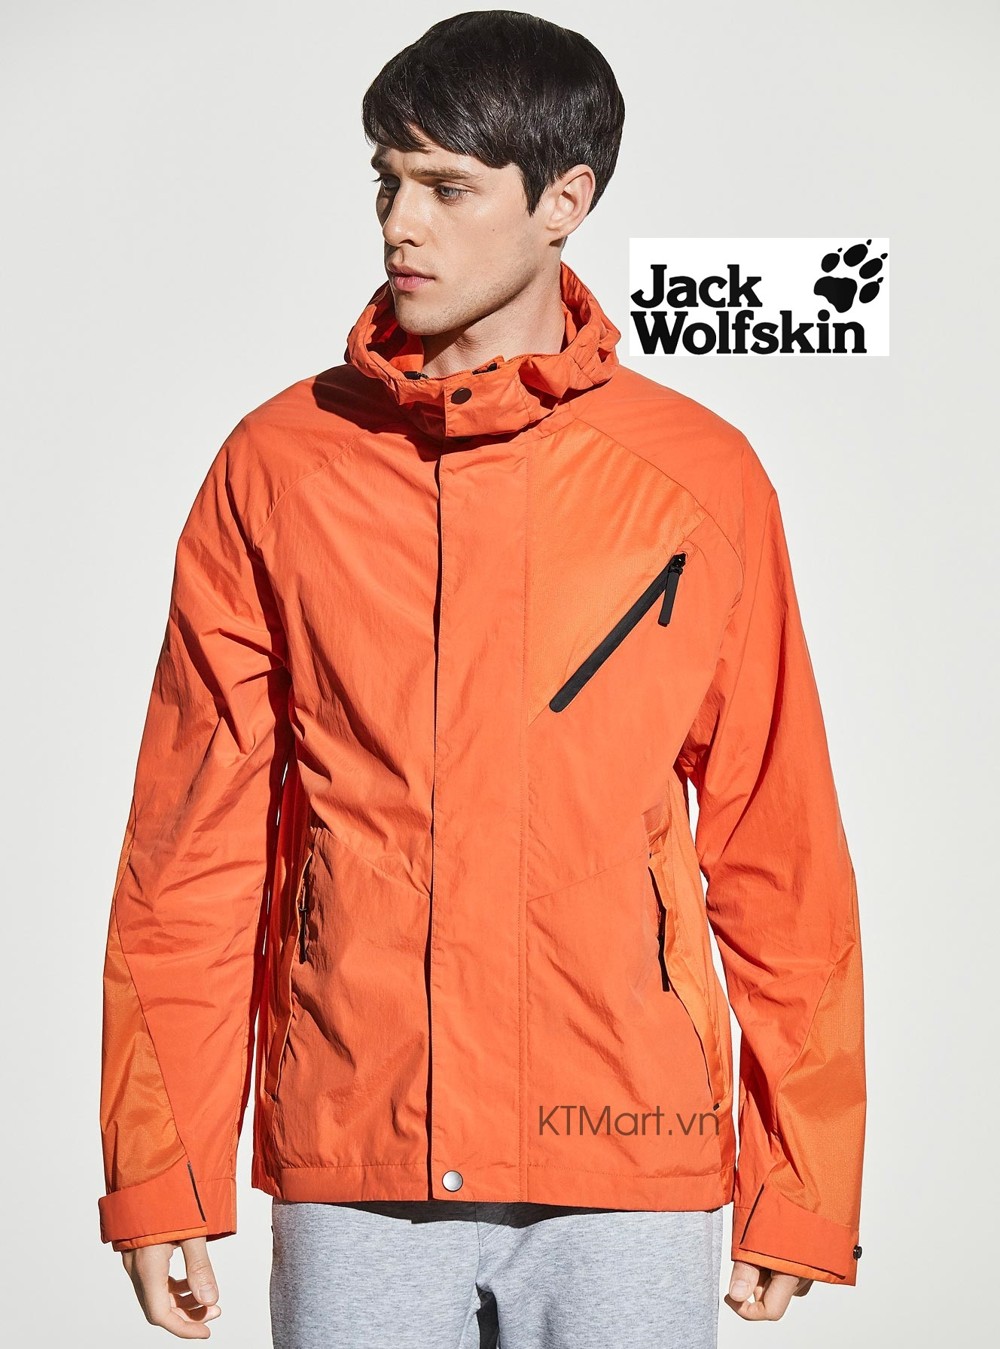 Jack Wolfskin Windhoek Jacket M Windproof Jacket 1306631 Jack Wolfskin Tech Lab size S, L